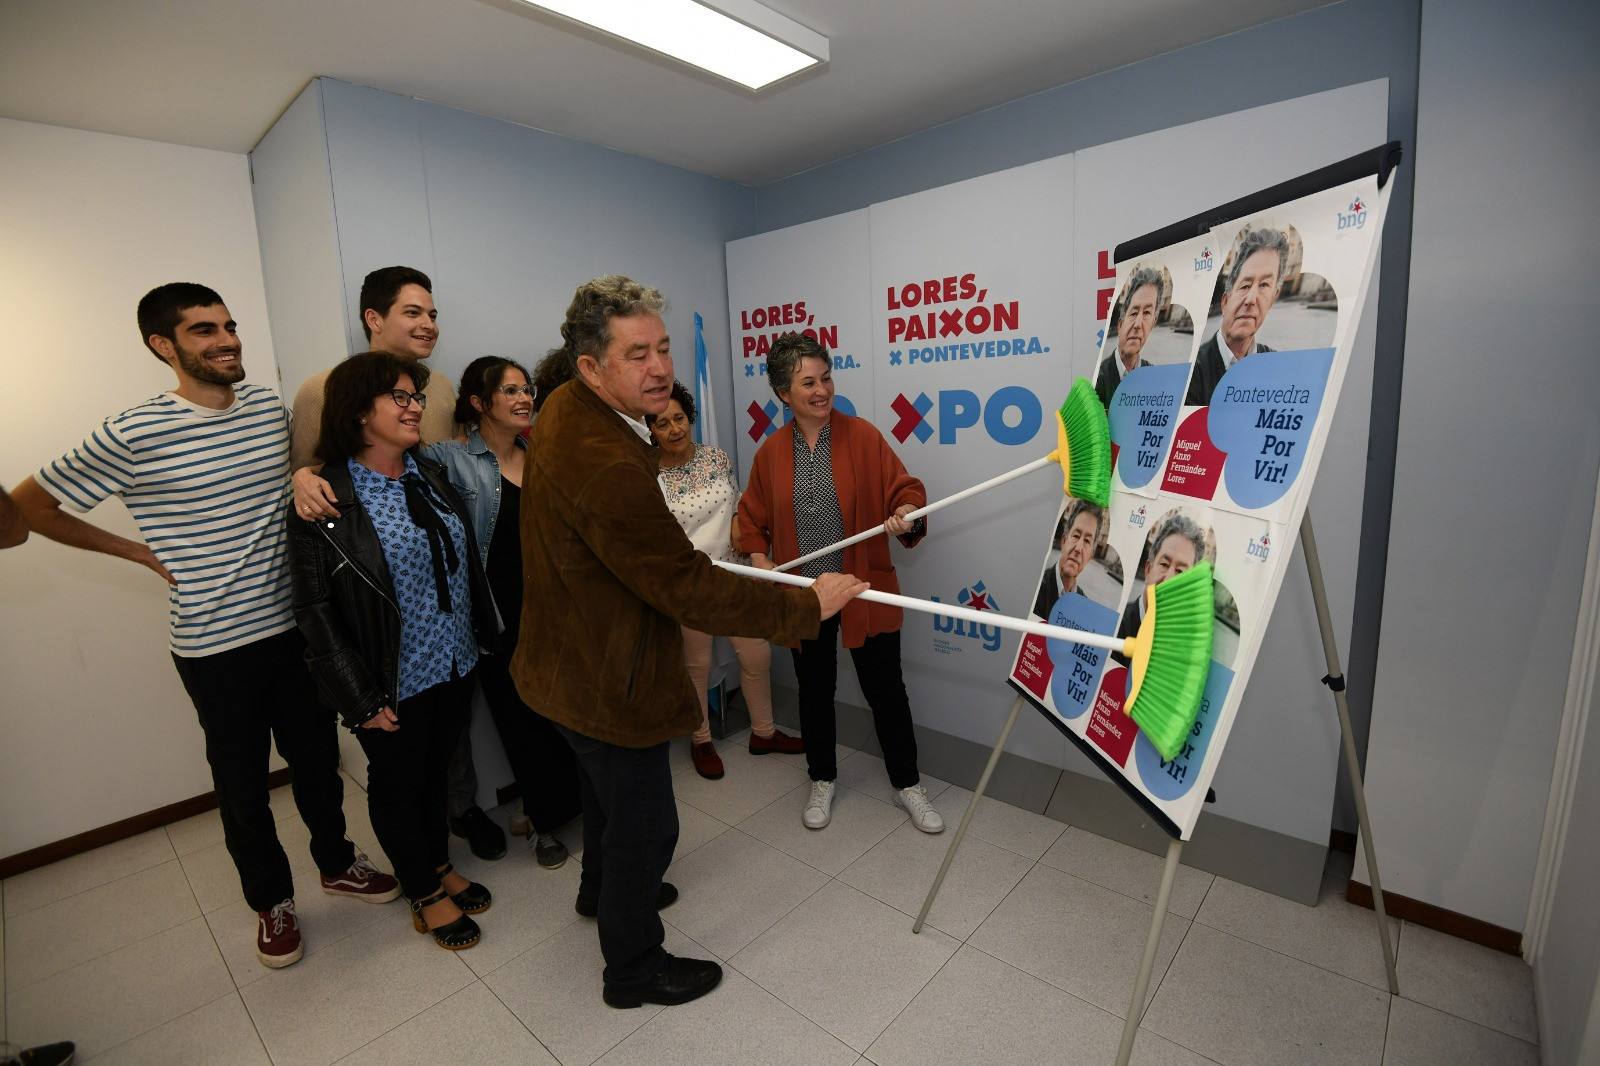 Pegada de carteles del candidato nacionalista, Miguel Anxo Fernández Lores.